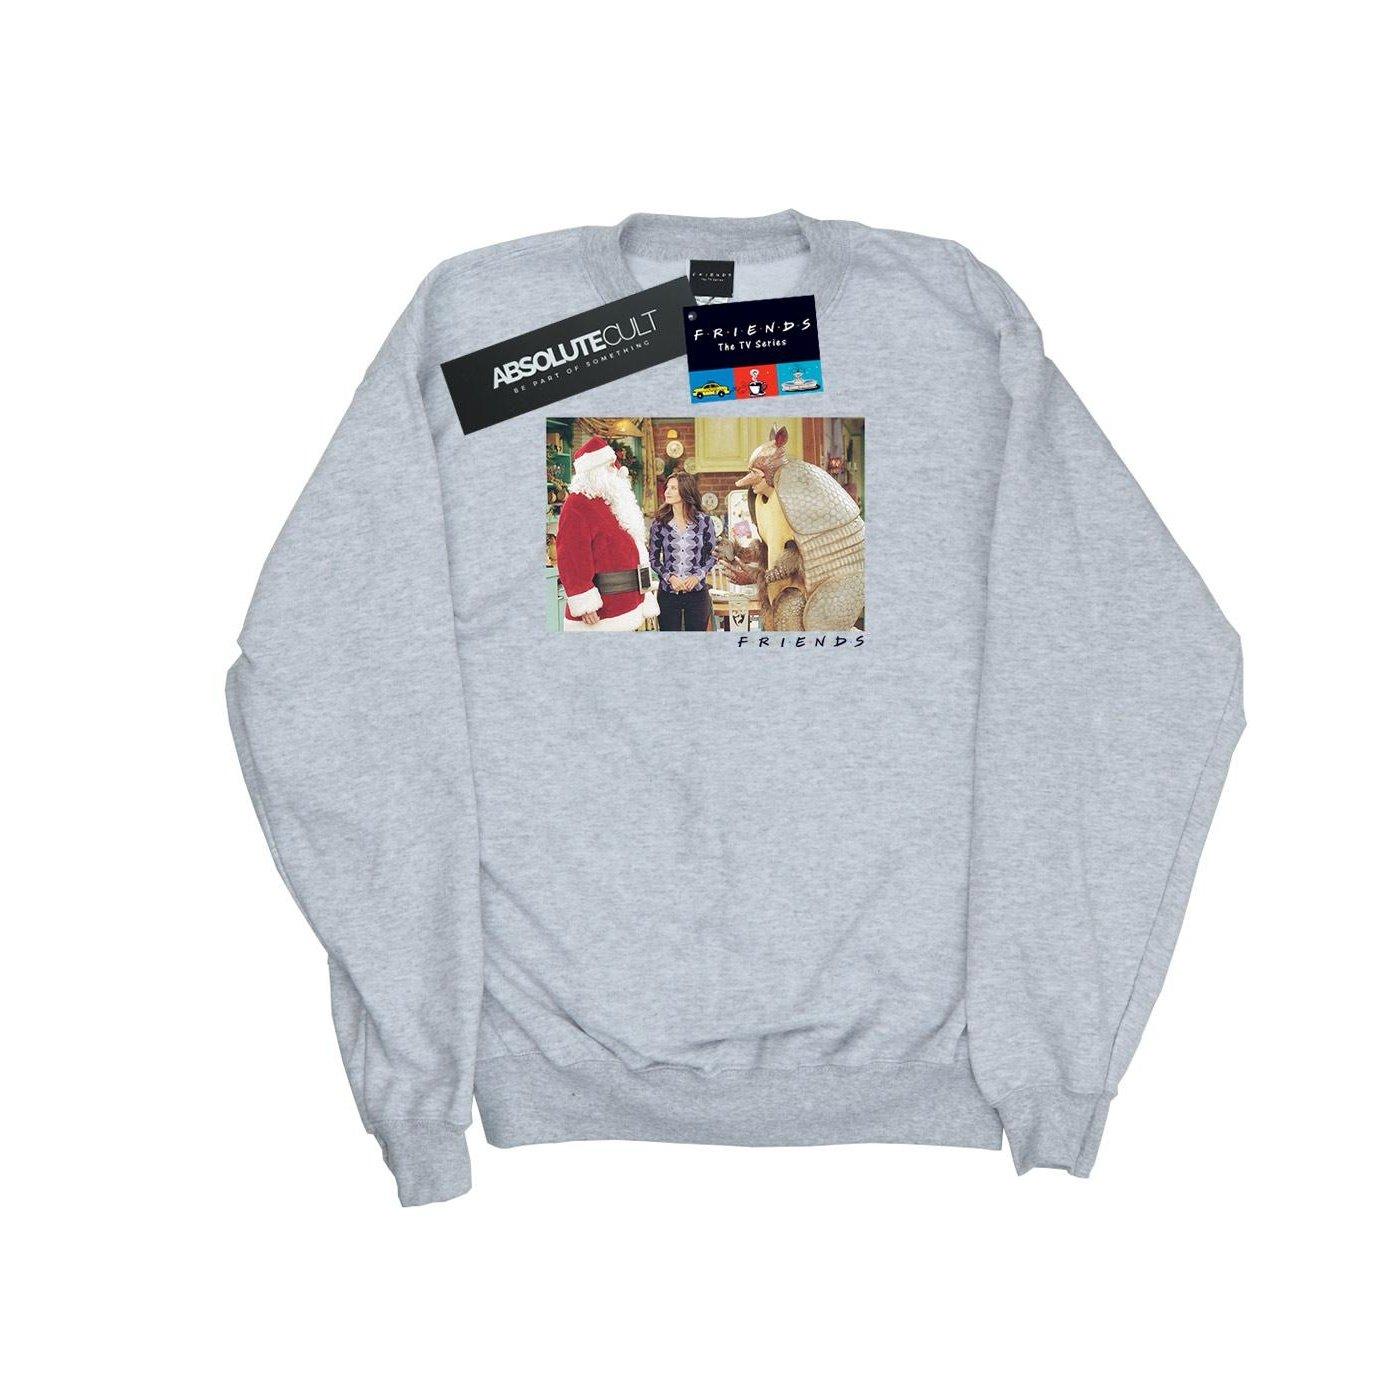 The Holiday Armadillo Sweatshirt Jungen Grau 140/146 von Friends